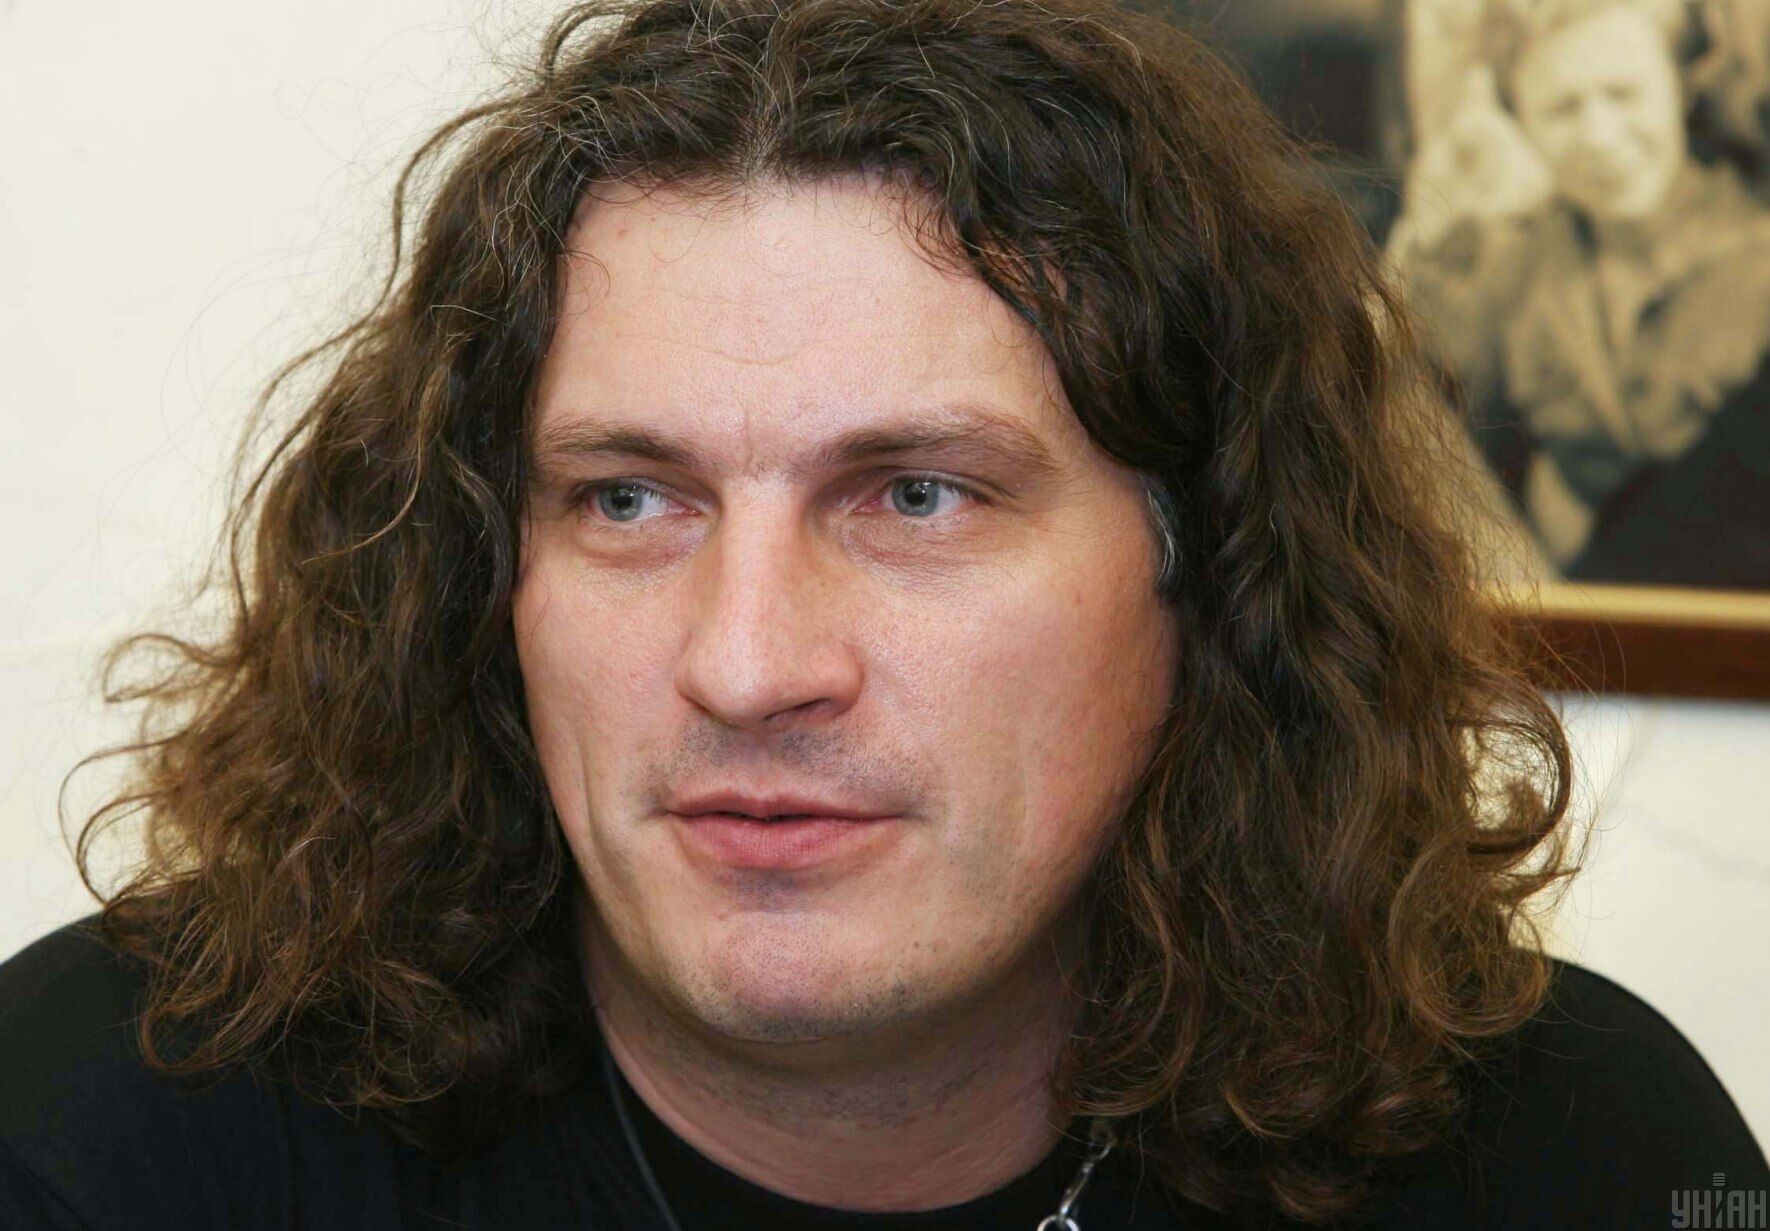 Андрій Кузьменко на презентації проекту "Пающіє труси" у Львові, 13 березня 2008 року